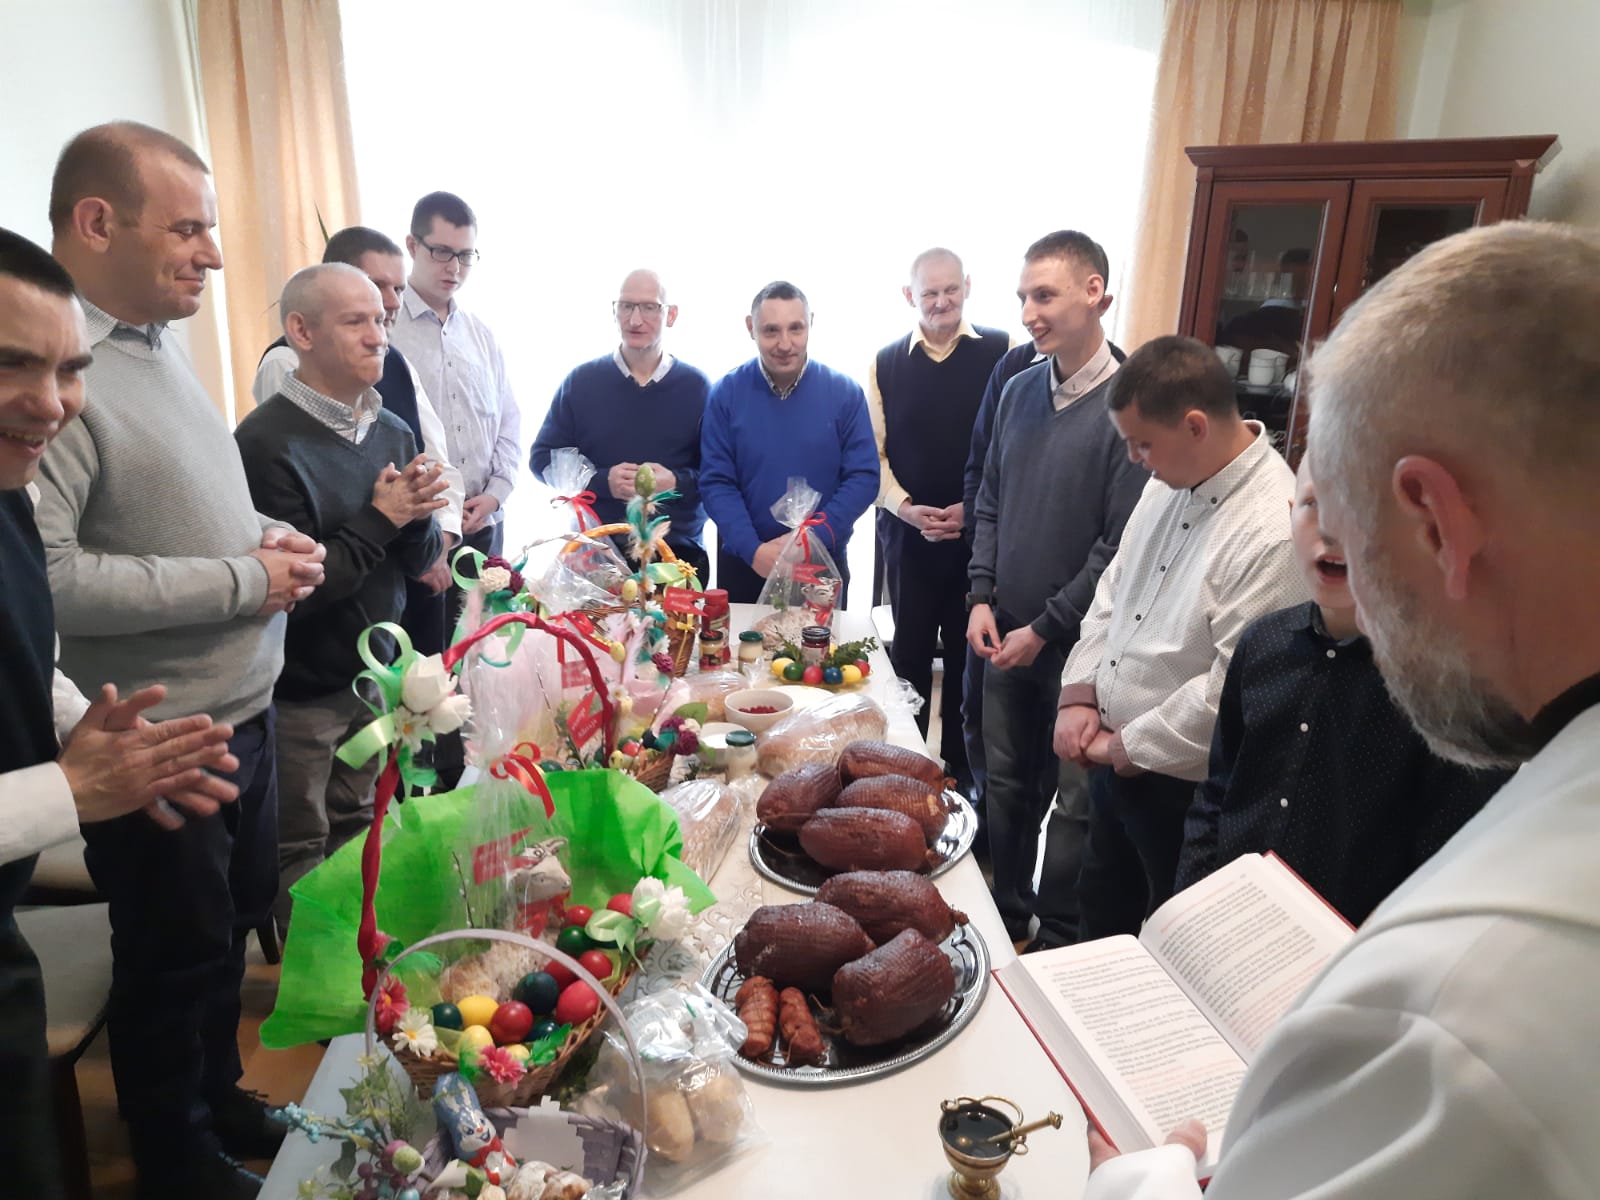 Zdjęcie wykonane w pokoju gościnnym podczas święcenia pokarmów przez księdza proboszcza. Przy obficie zastawionym stole zgromadzeni są mieszkańcy domu.